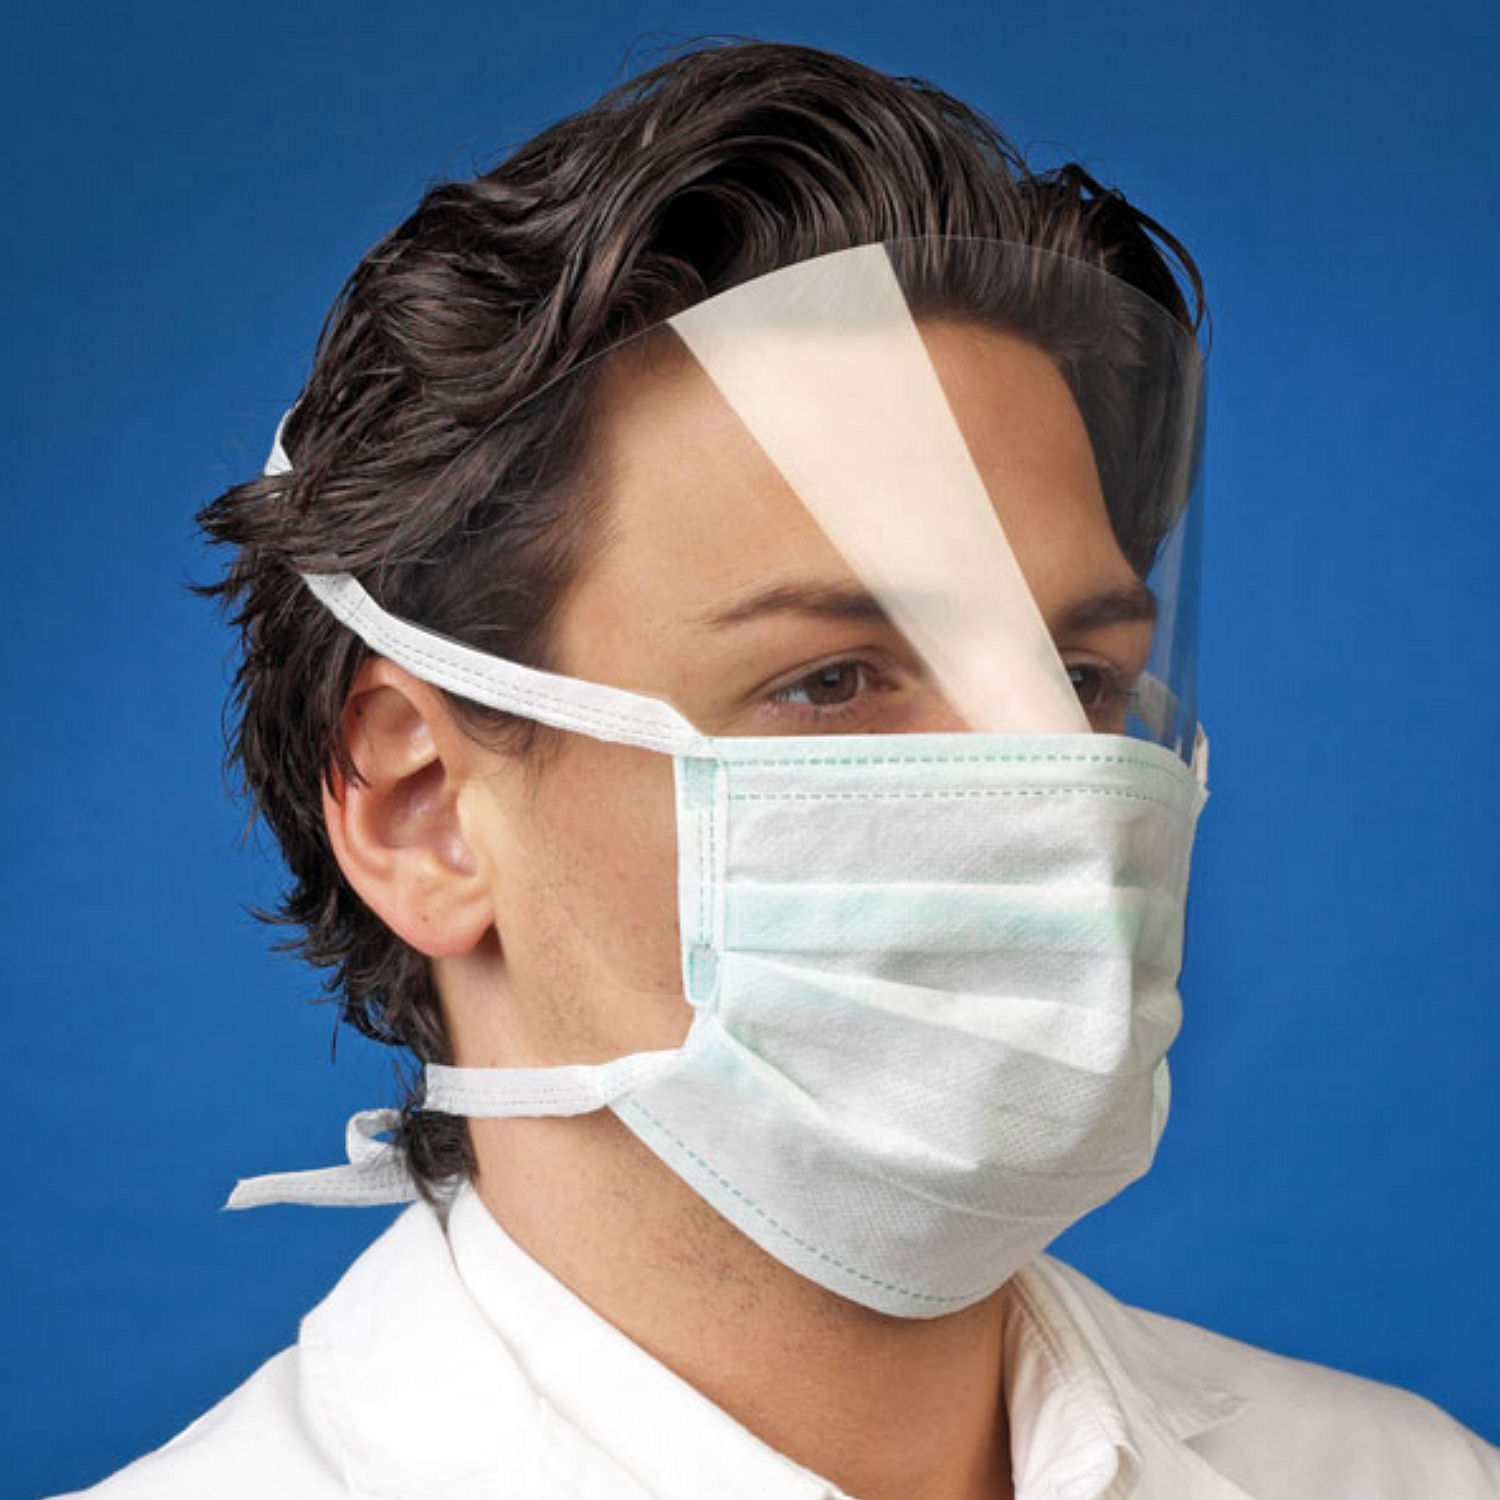 10 Gesichtsschild Maske Plastikmaske Gesichtschutz Mundschutz Plastik Visier Neu 